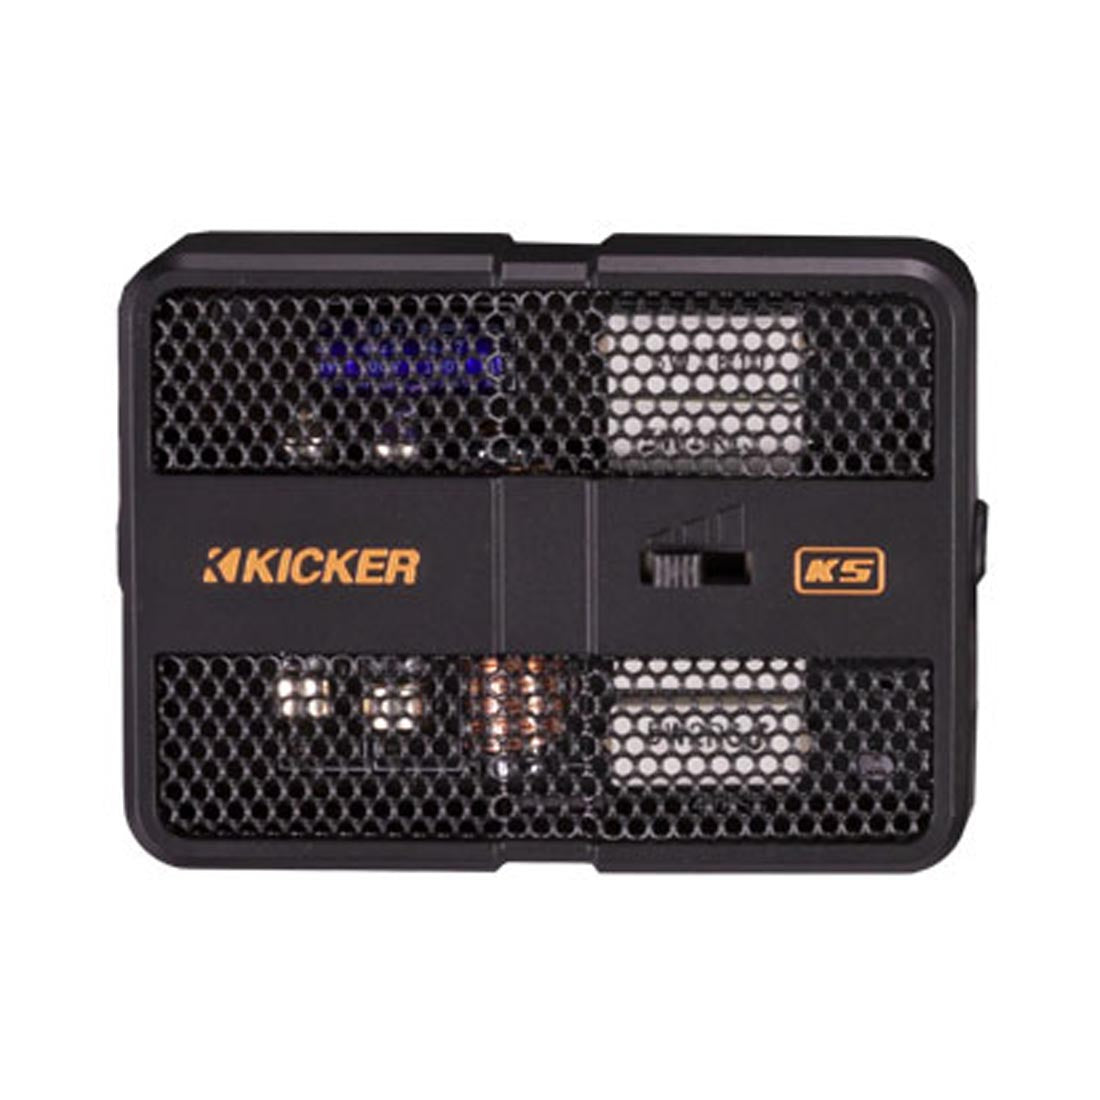 Kicker 51KSS6804 KS Series 6x8" Component Speaker System crossover